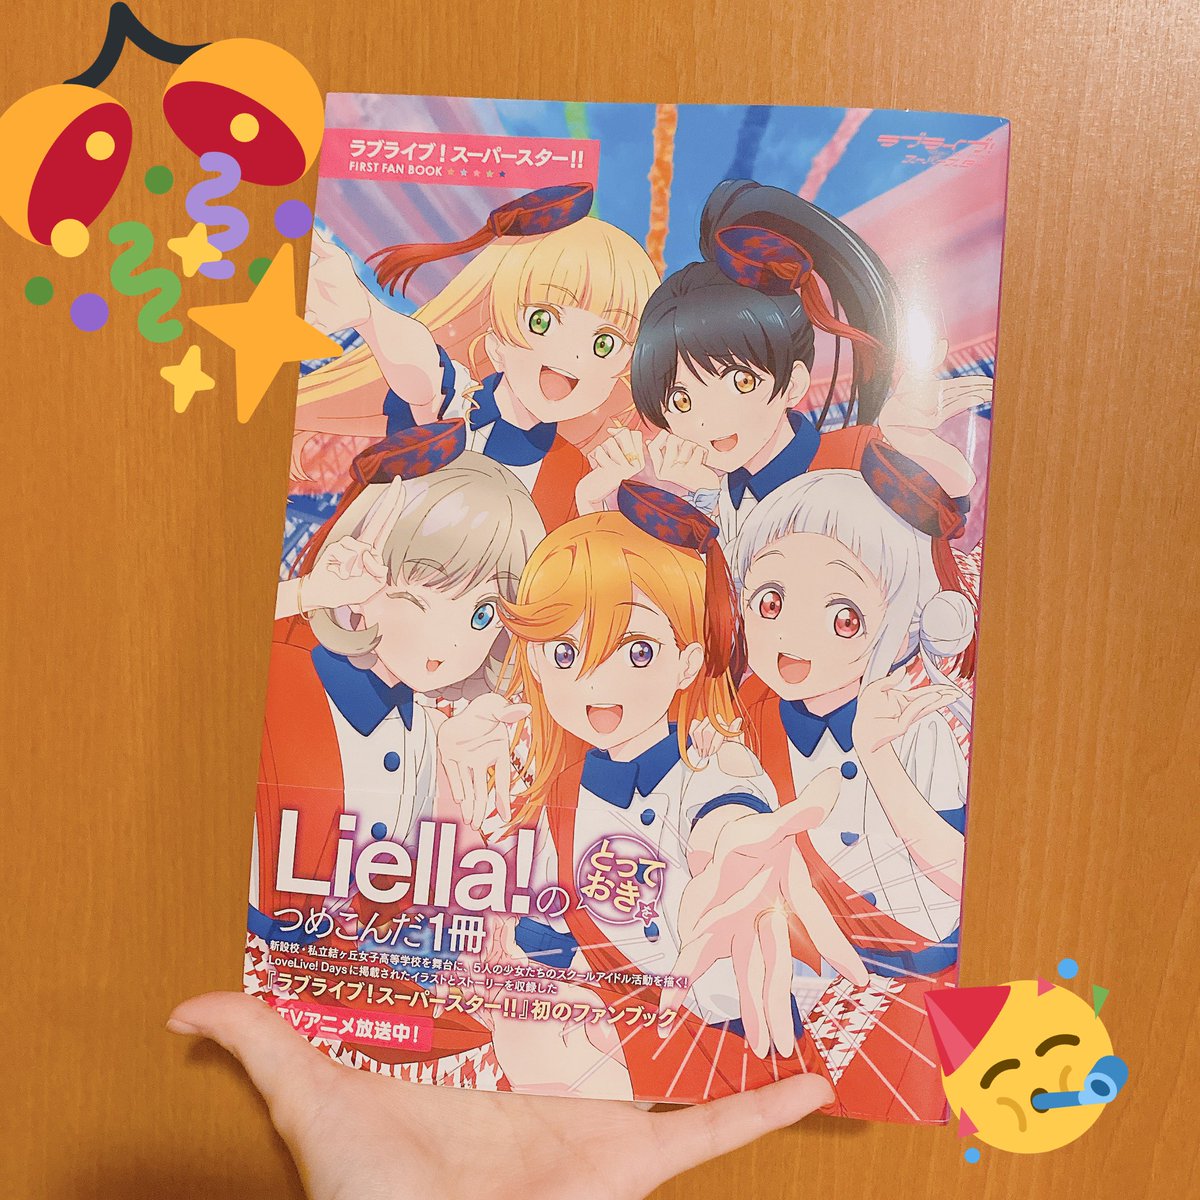 7月30日発売の「ラブライブ!スーパースター‼︎FIRST FAN BOOK」に渋谷と原宿に居るLiella!ちゃんを描き下ろさせて頂きました!
LoveLive!Daysで連載してるLiella!HappyTimeも載っているのでお見掛けの際は是非宜しくお願いします💫
#lovelive #Liella! 